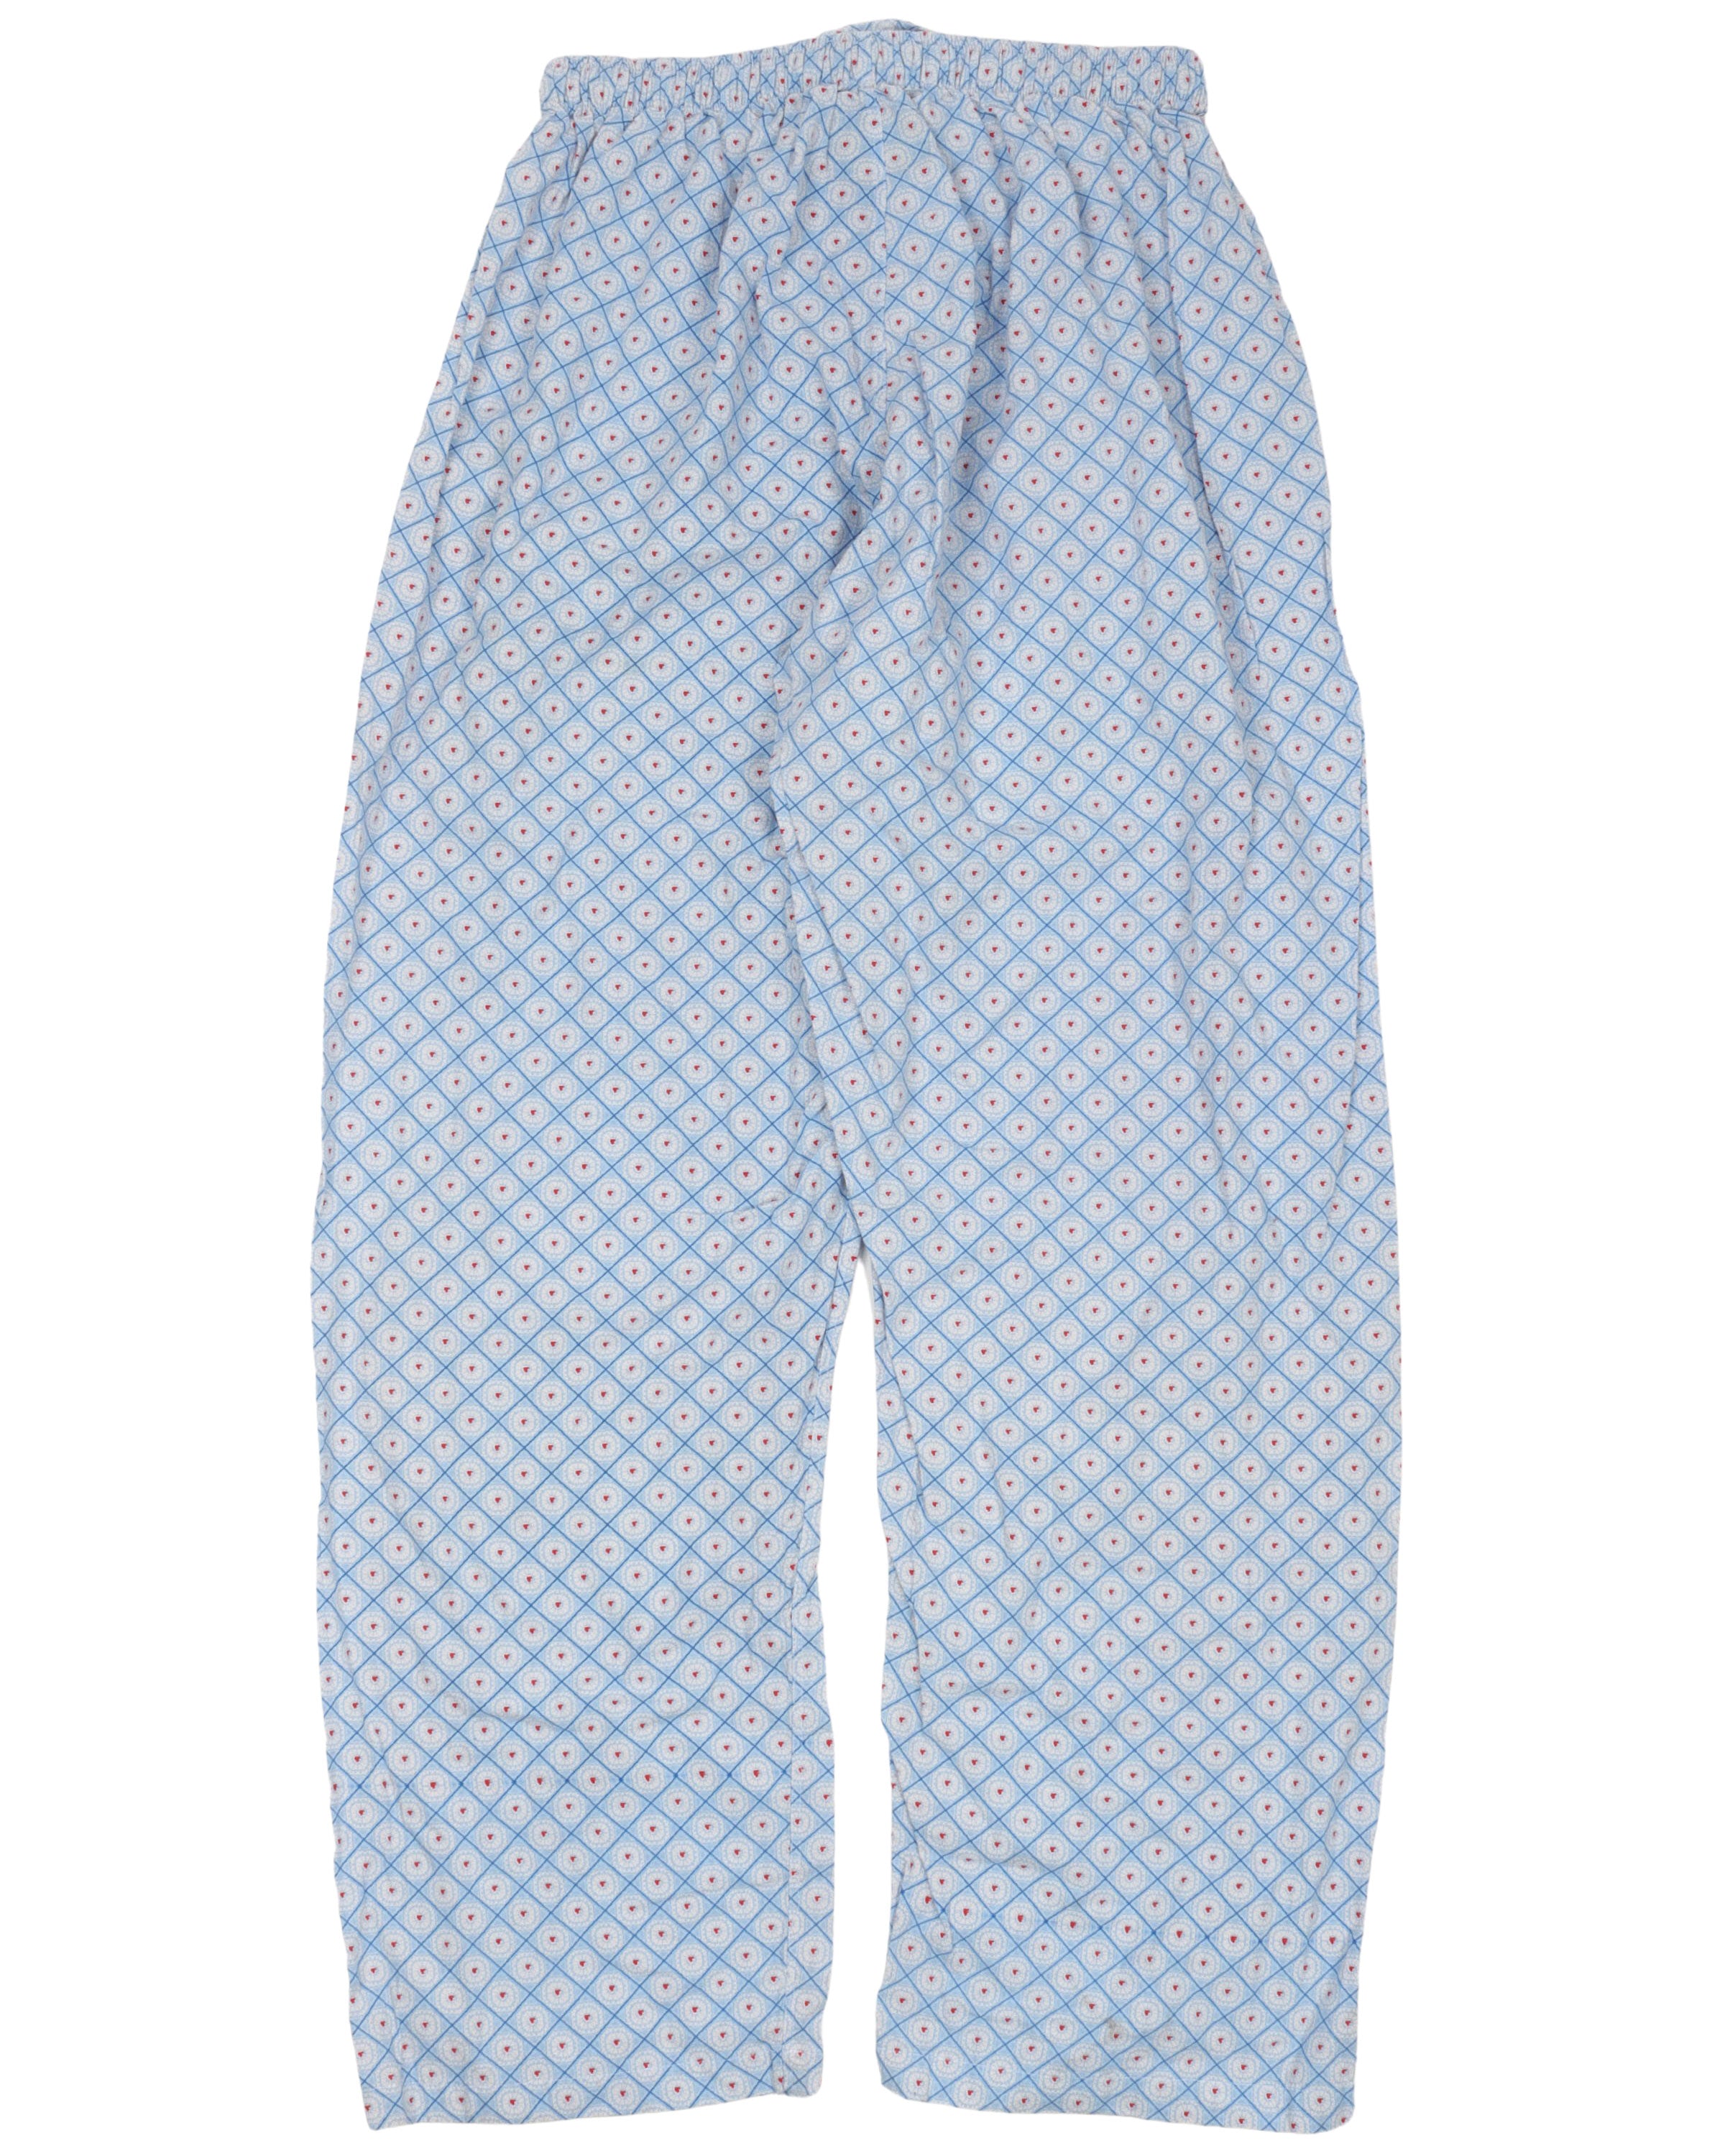 Pajama Pant